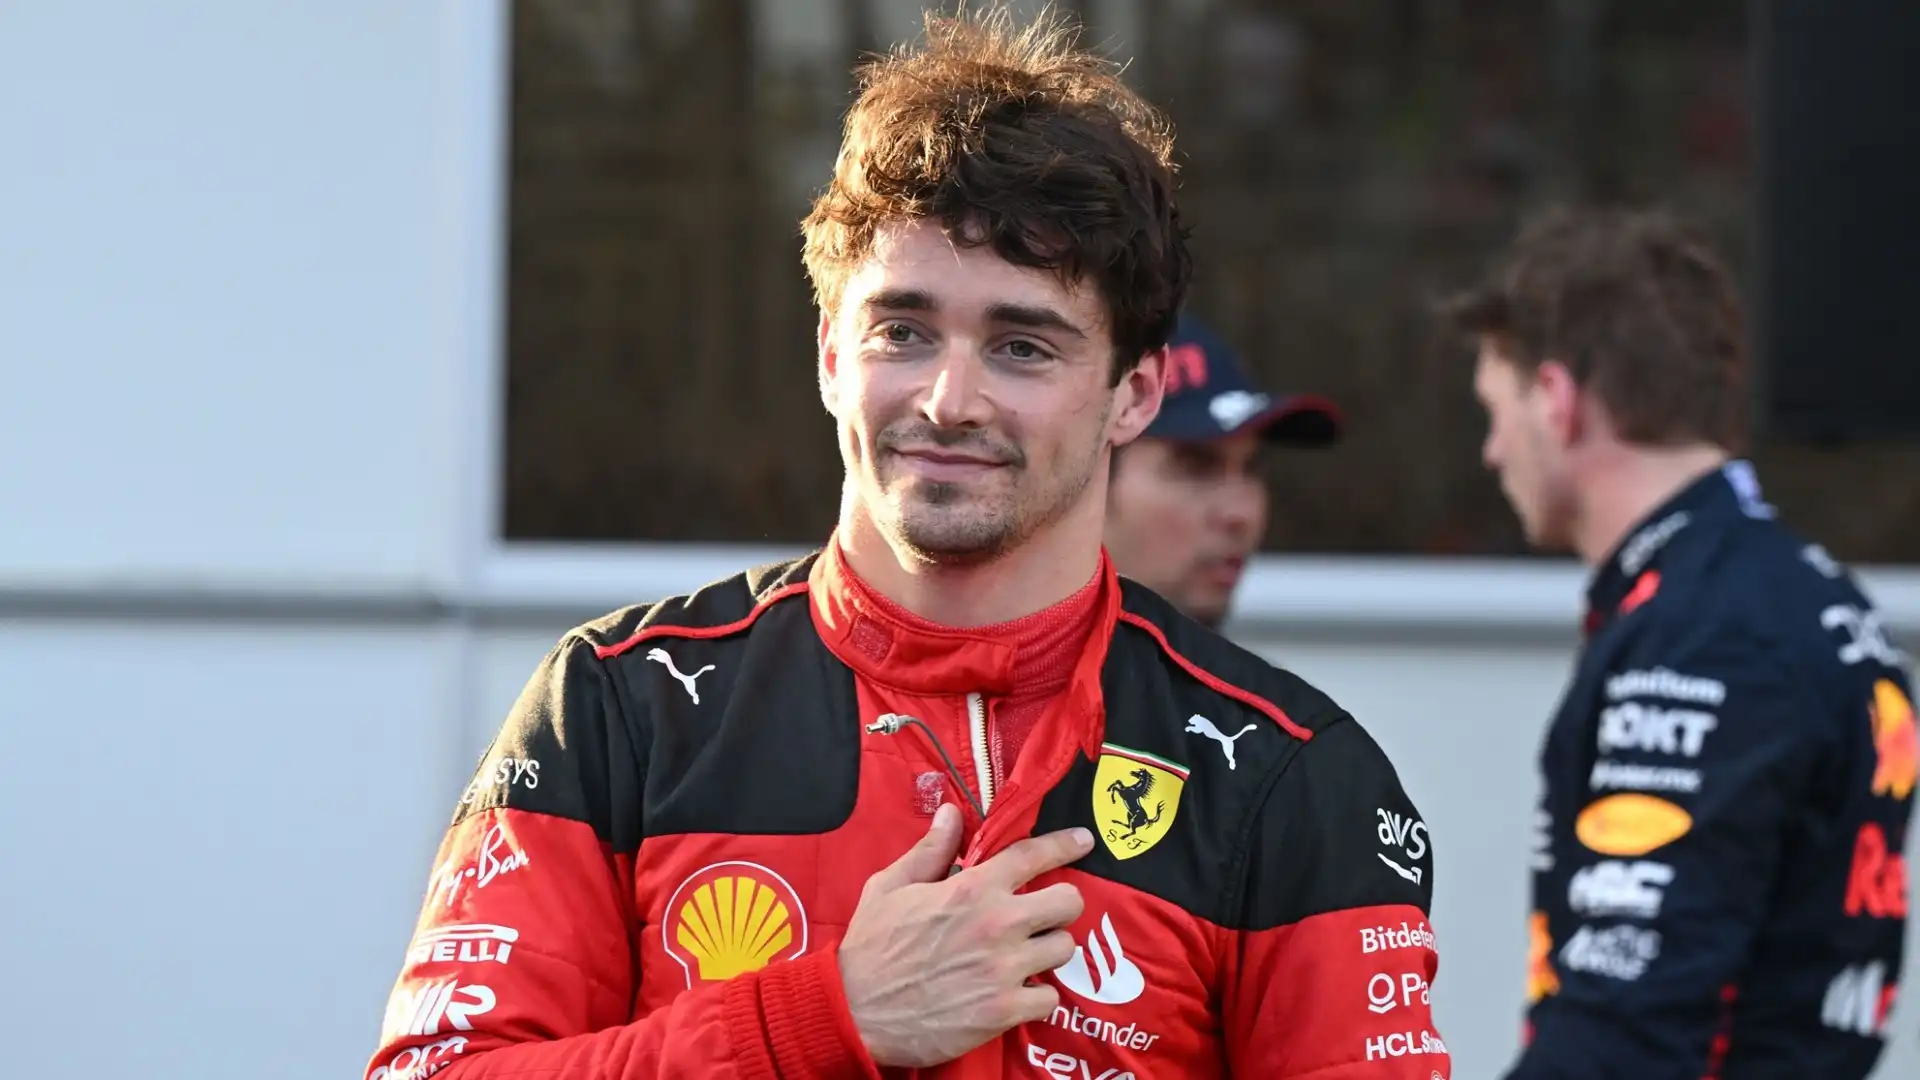 Secondo le indiscrezioni riportate dalla Gazzetta dello Sport, Leclerc rinnoverà il contratto in scadenza fino al 2029